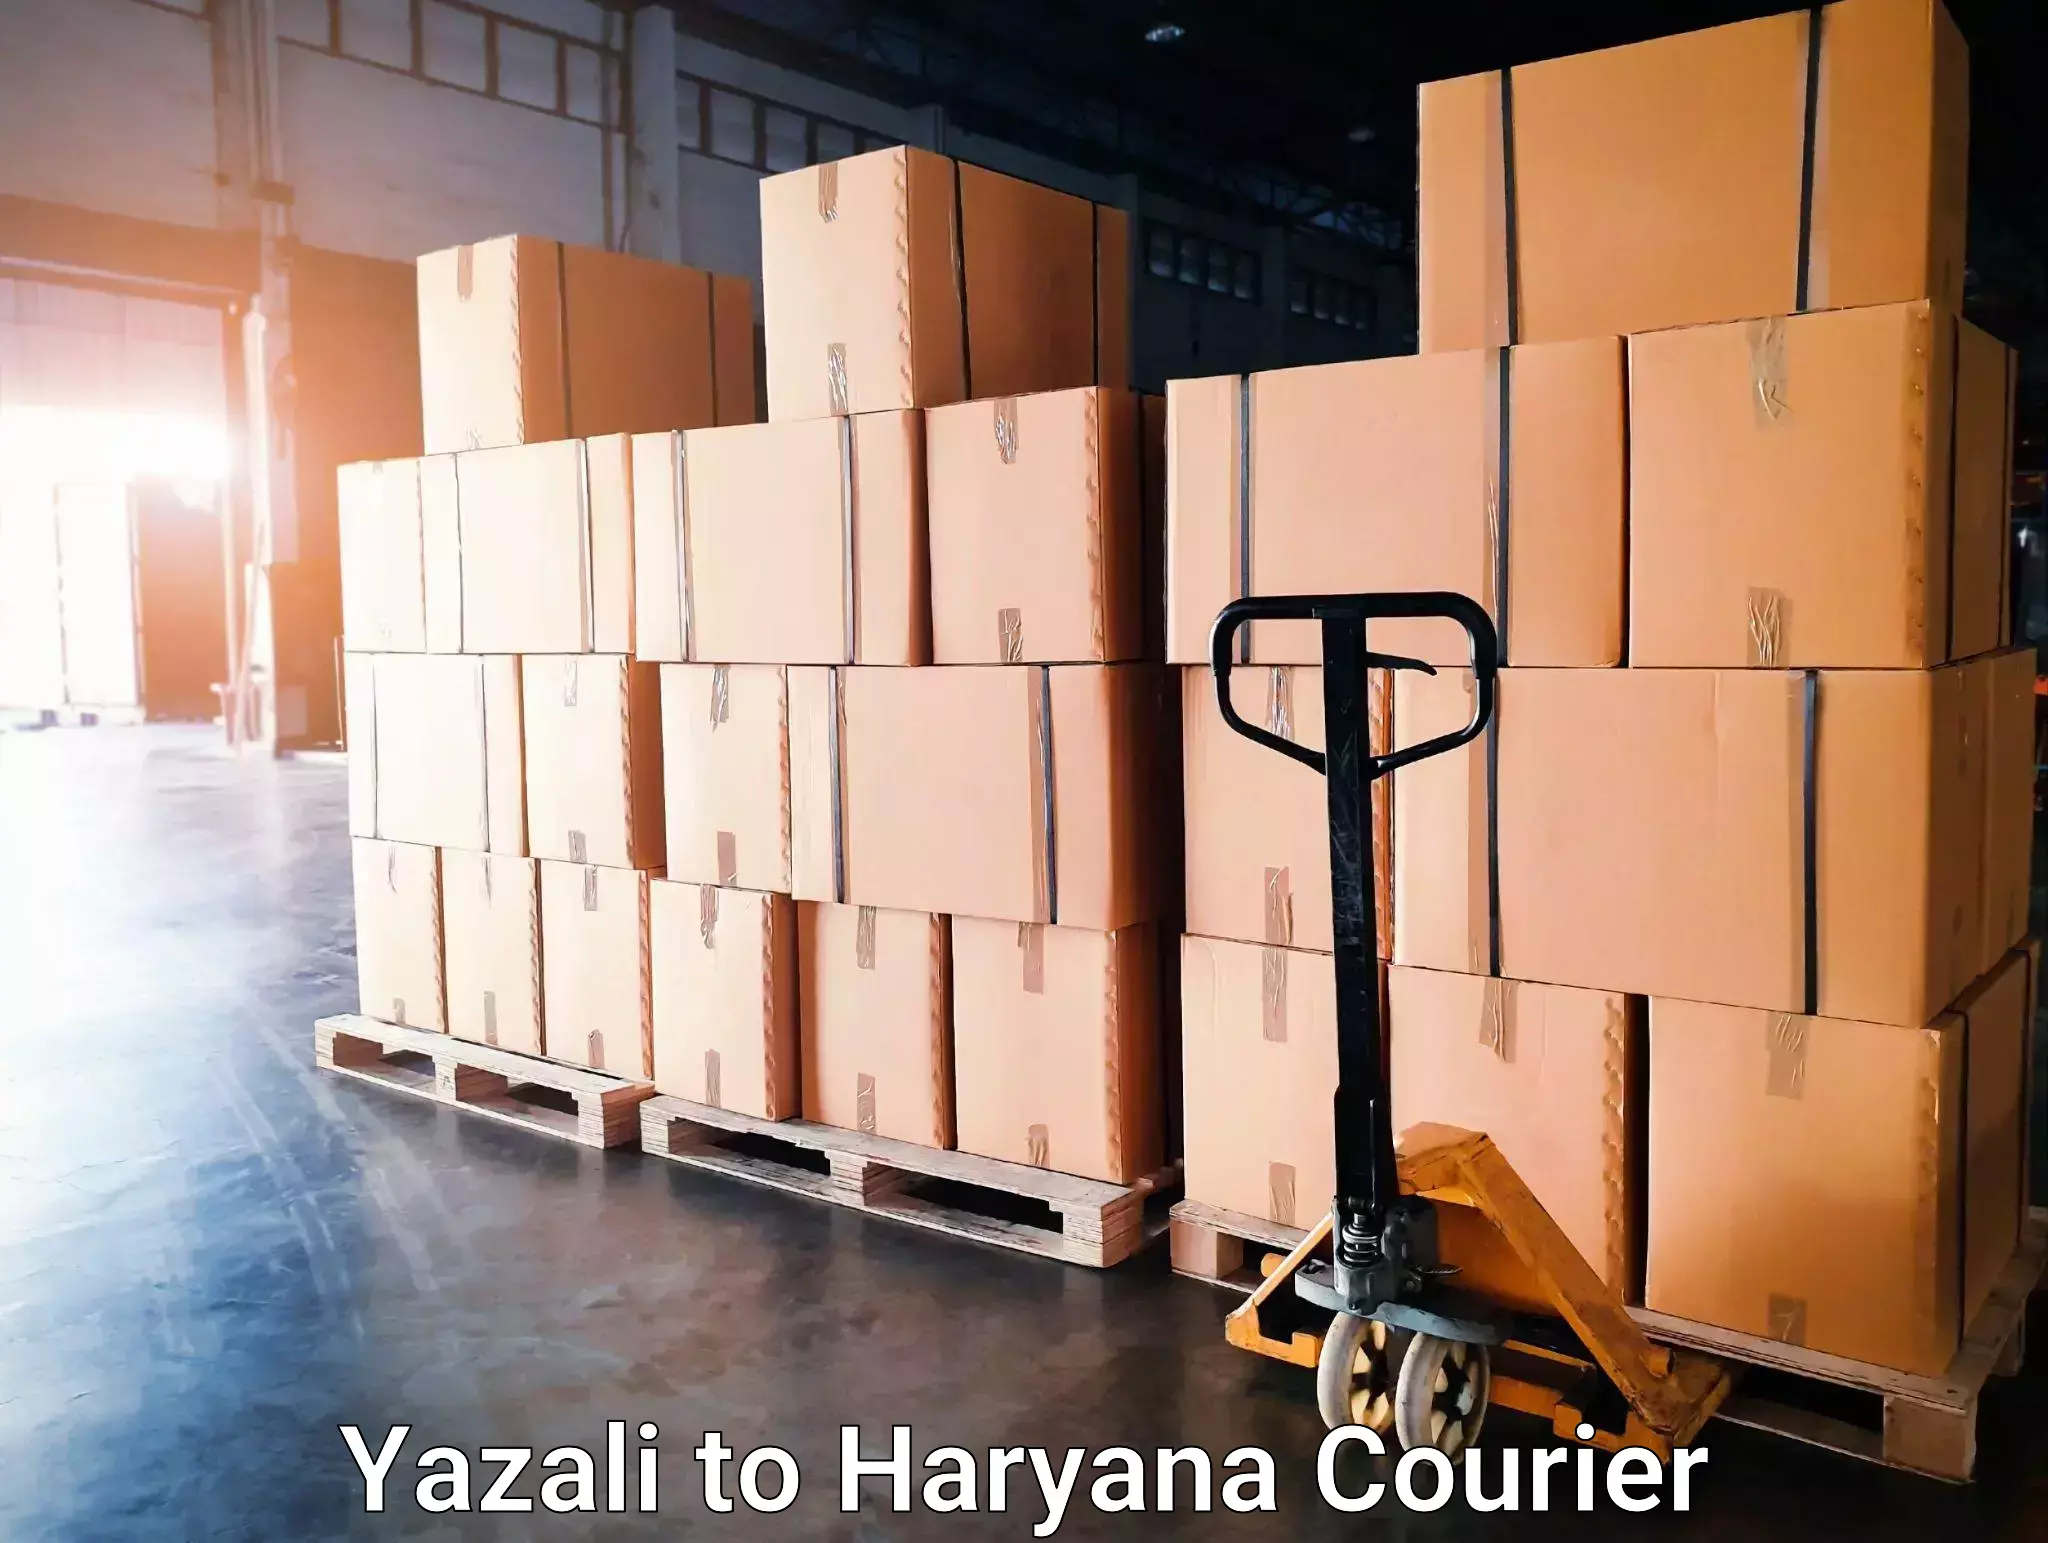 Courier dispatch services Yazali to Ellenabad